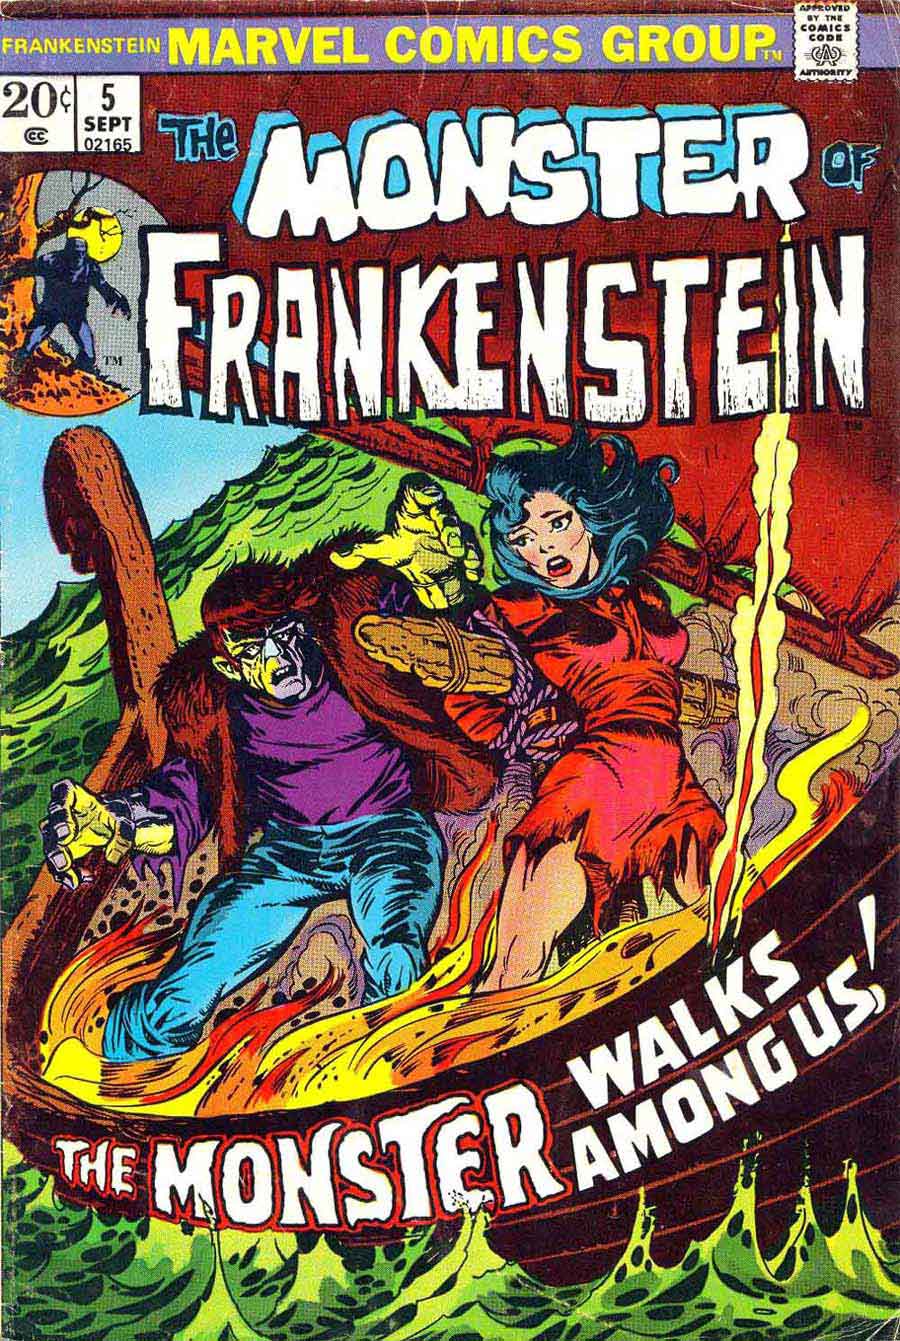 Frankenstein v2 #5 marvel comic book cover art by Mike Ploog